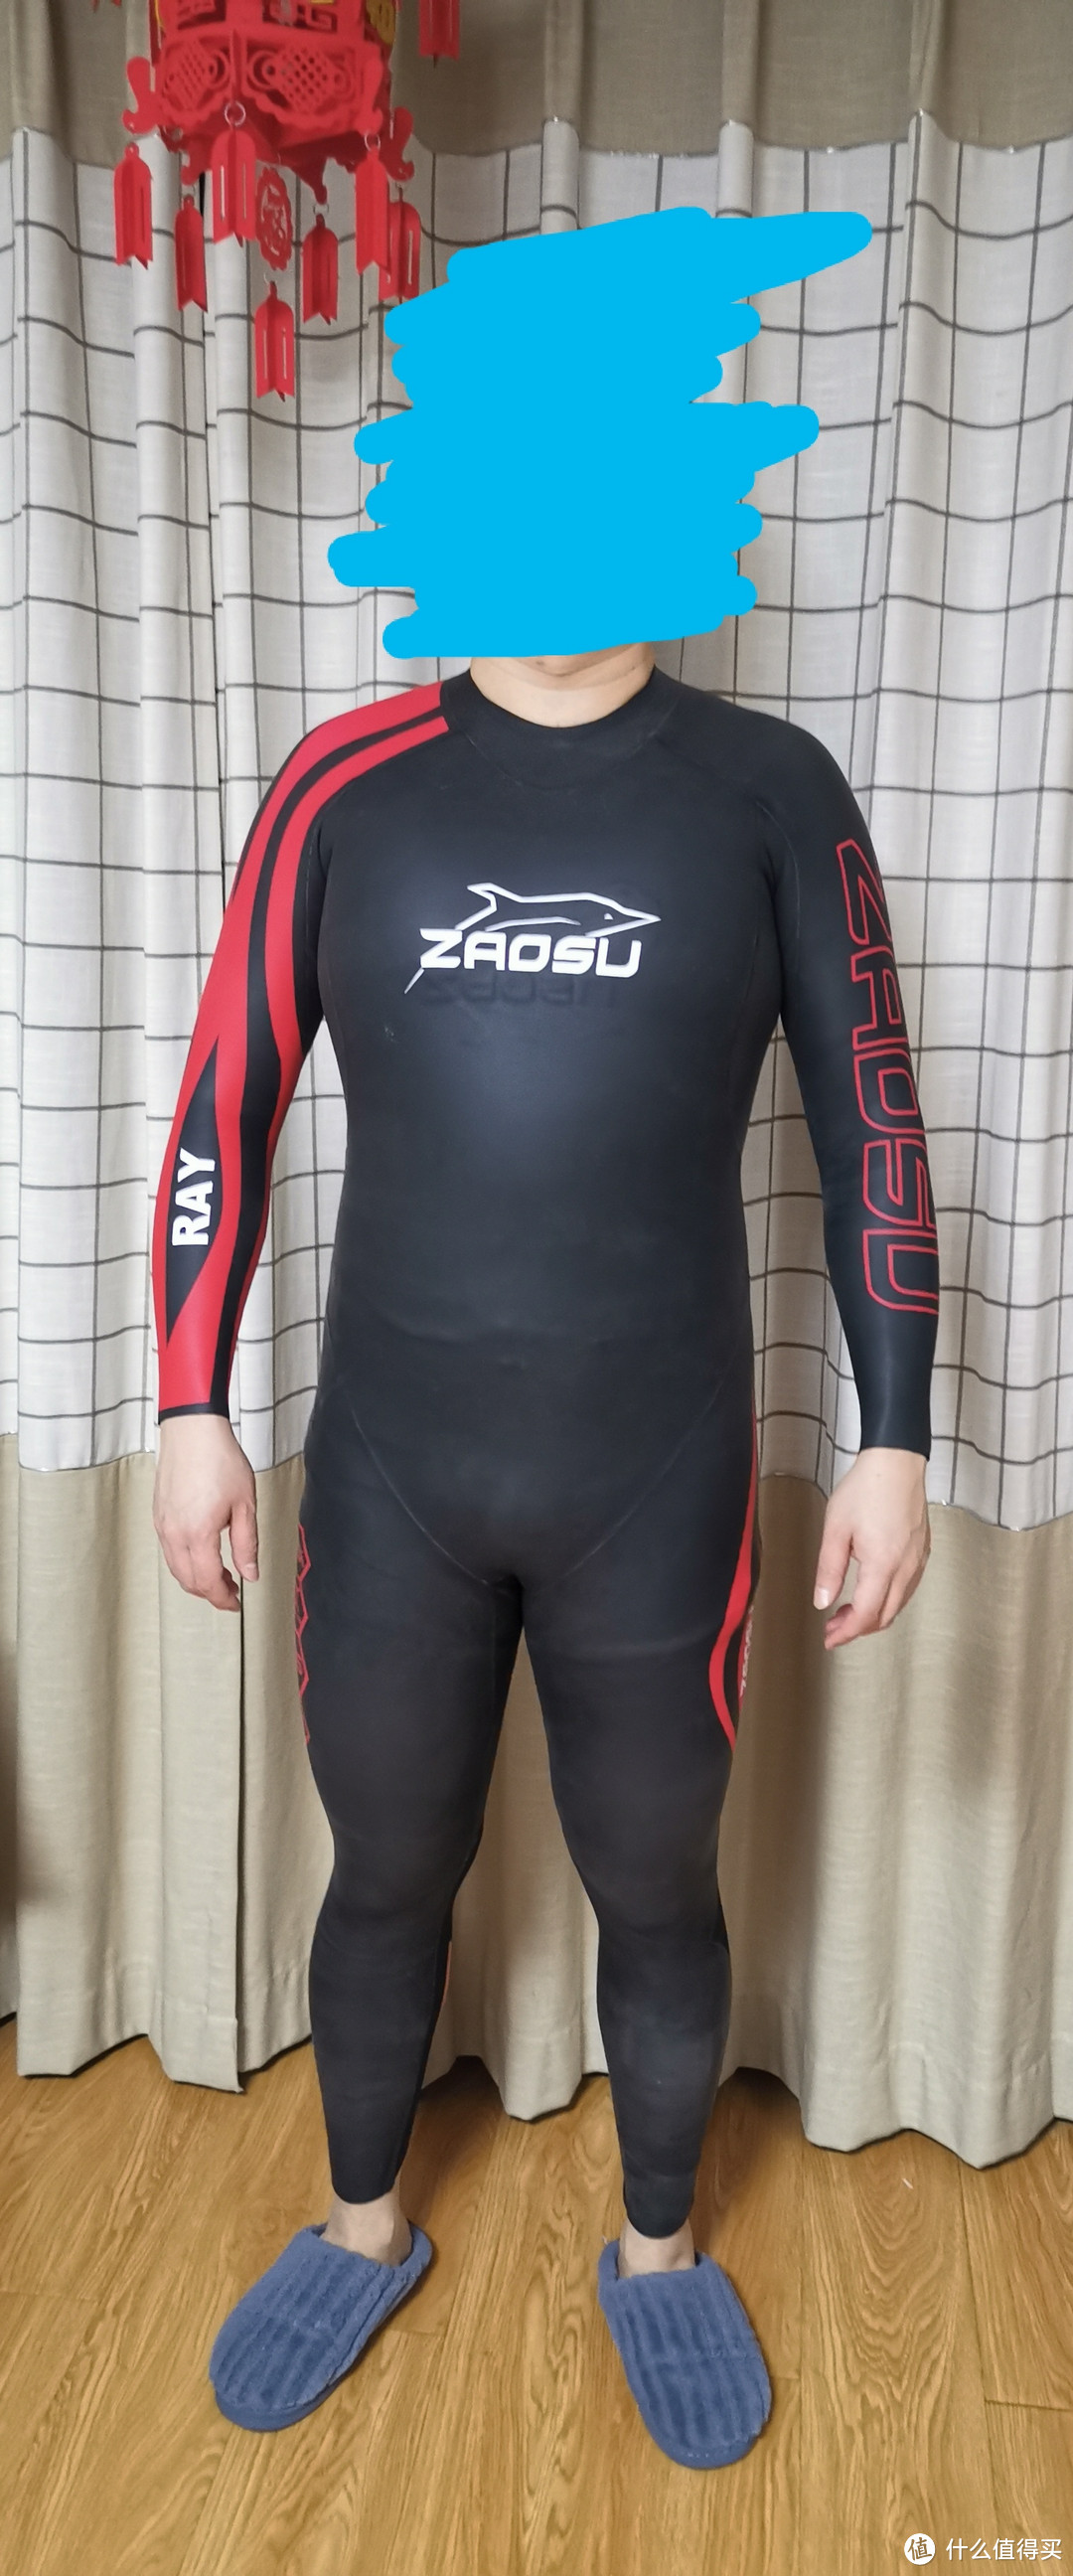 超速zaosu蛙泳胶衣、自由泳胶衣对比体验